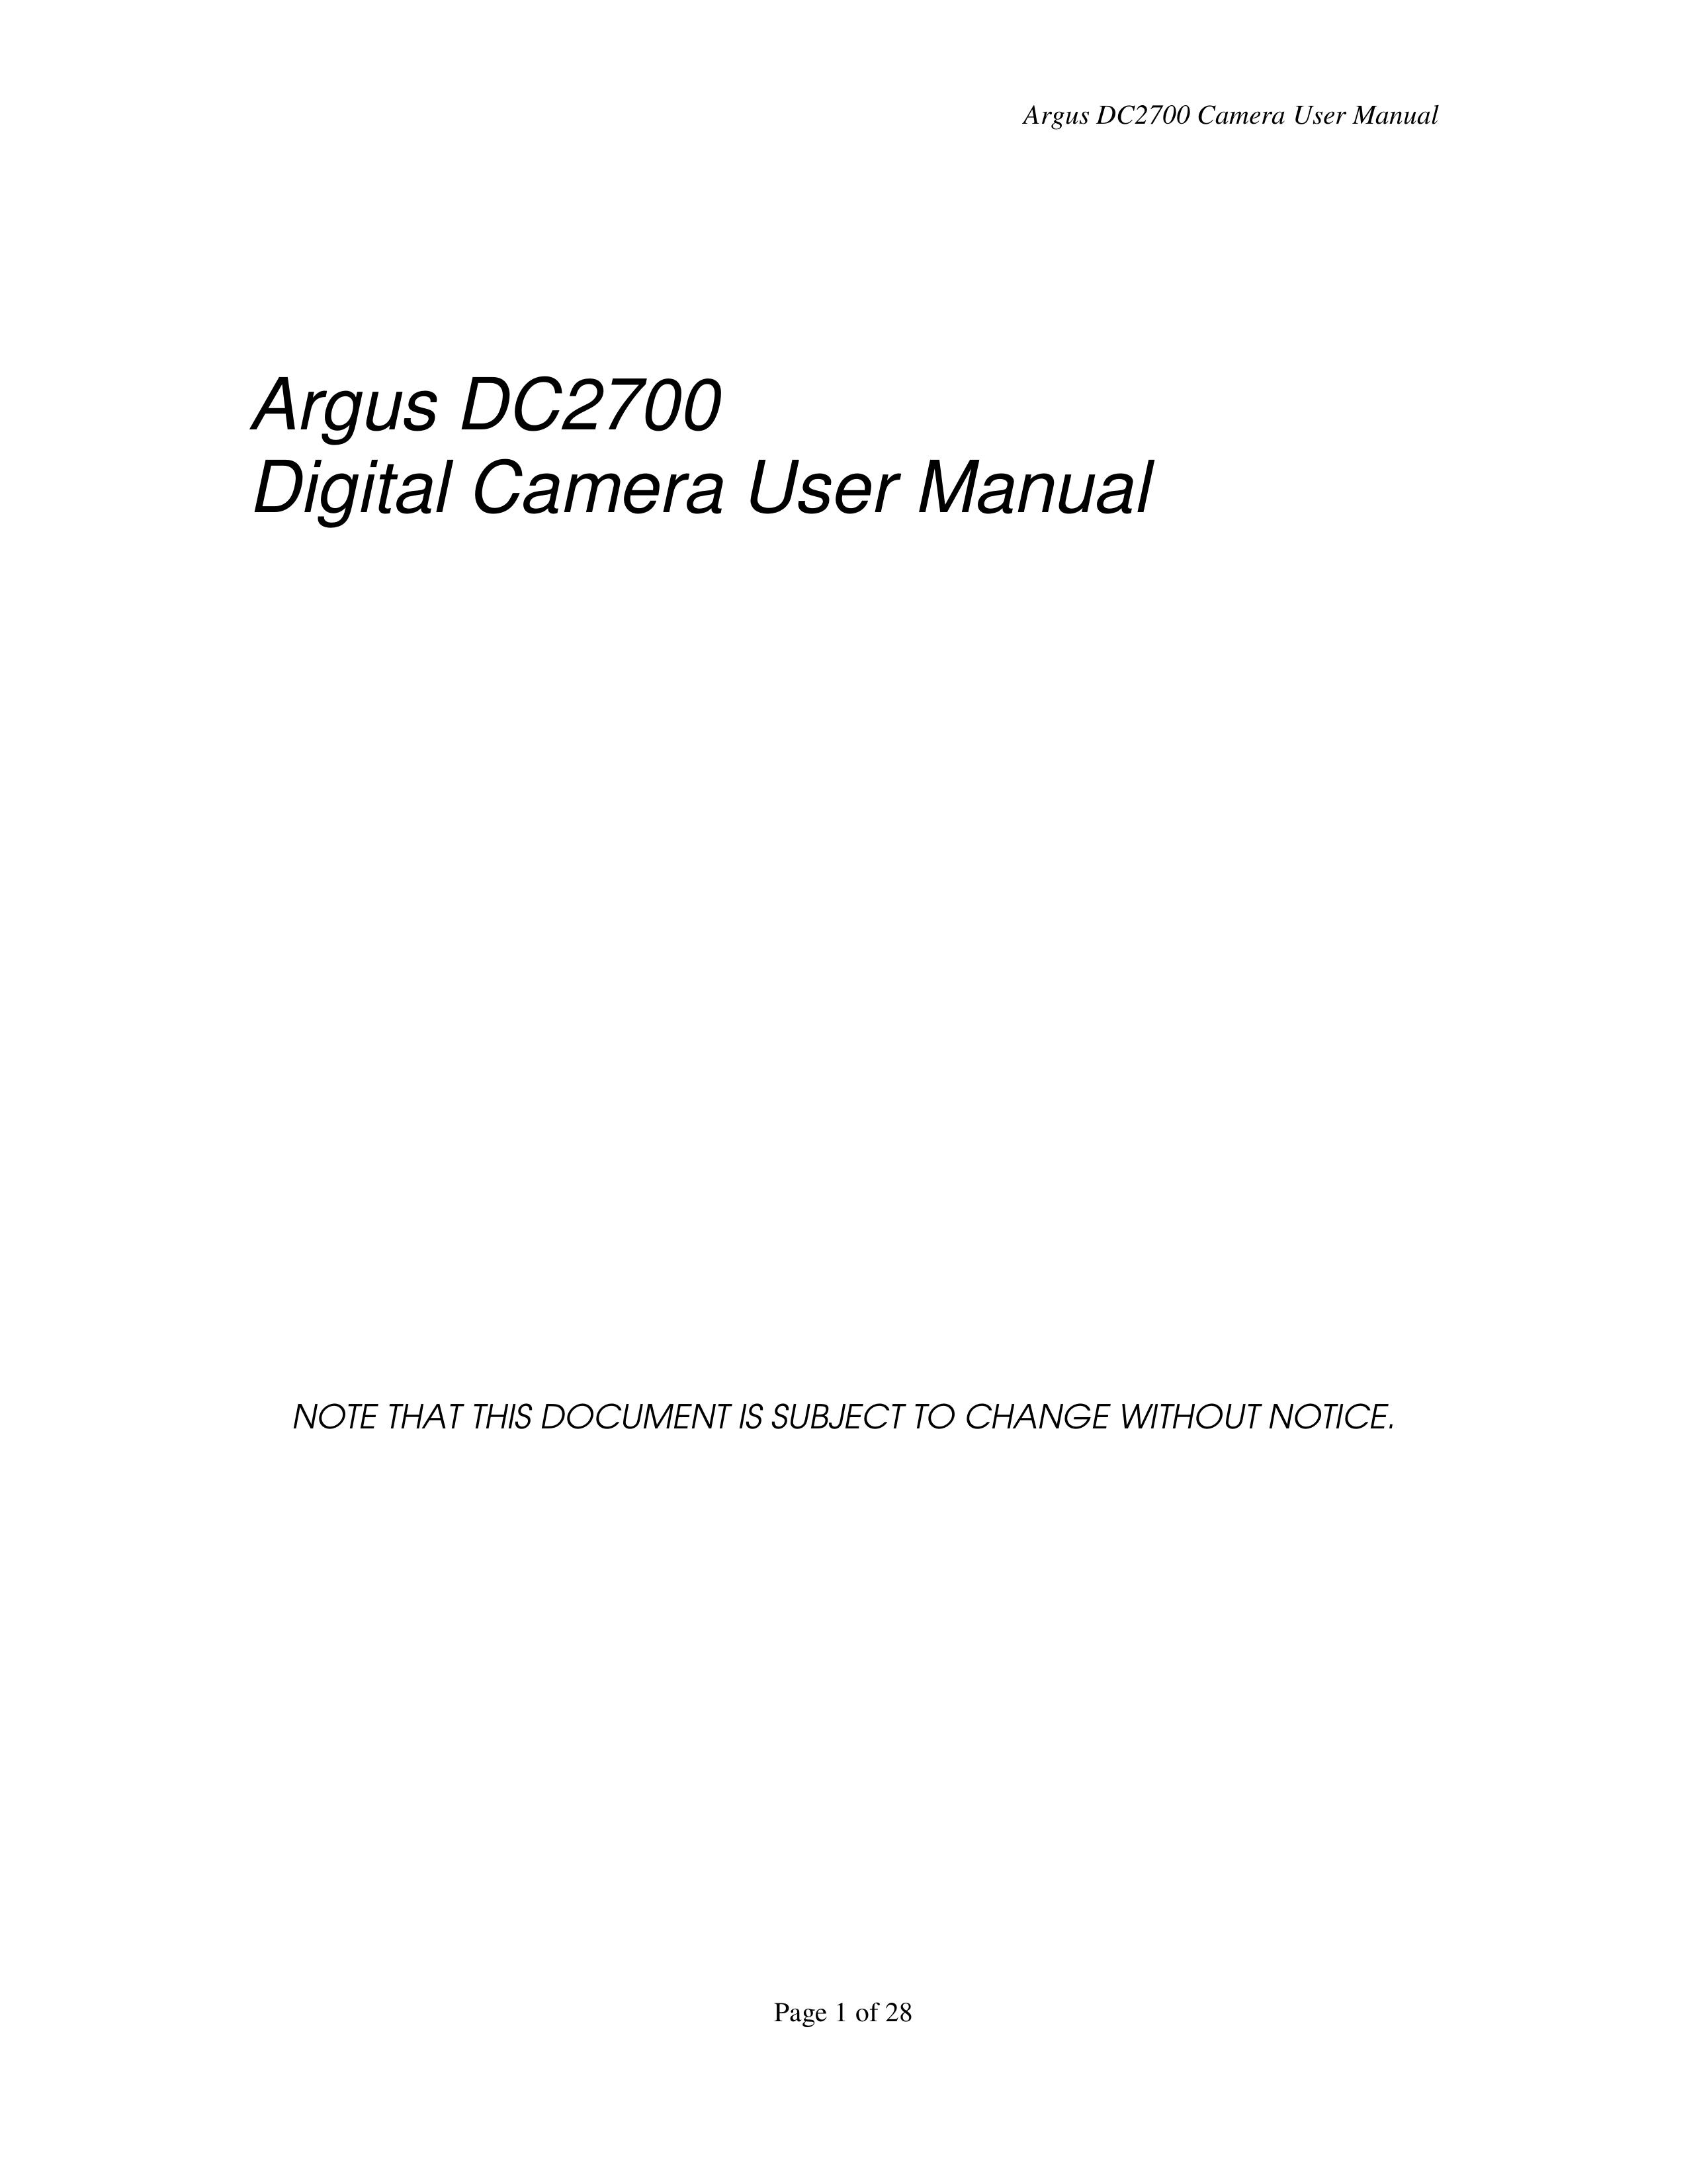 Argus Camera DC2700 Digital Camera User Manual